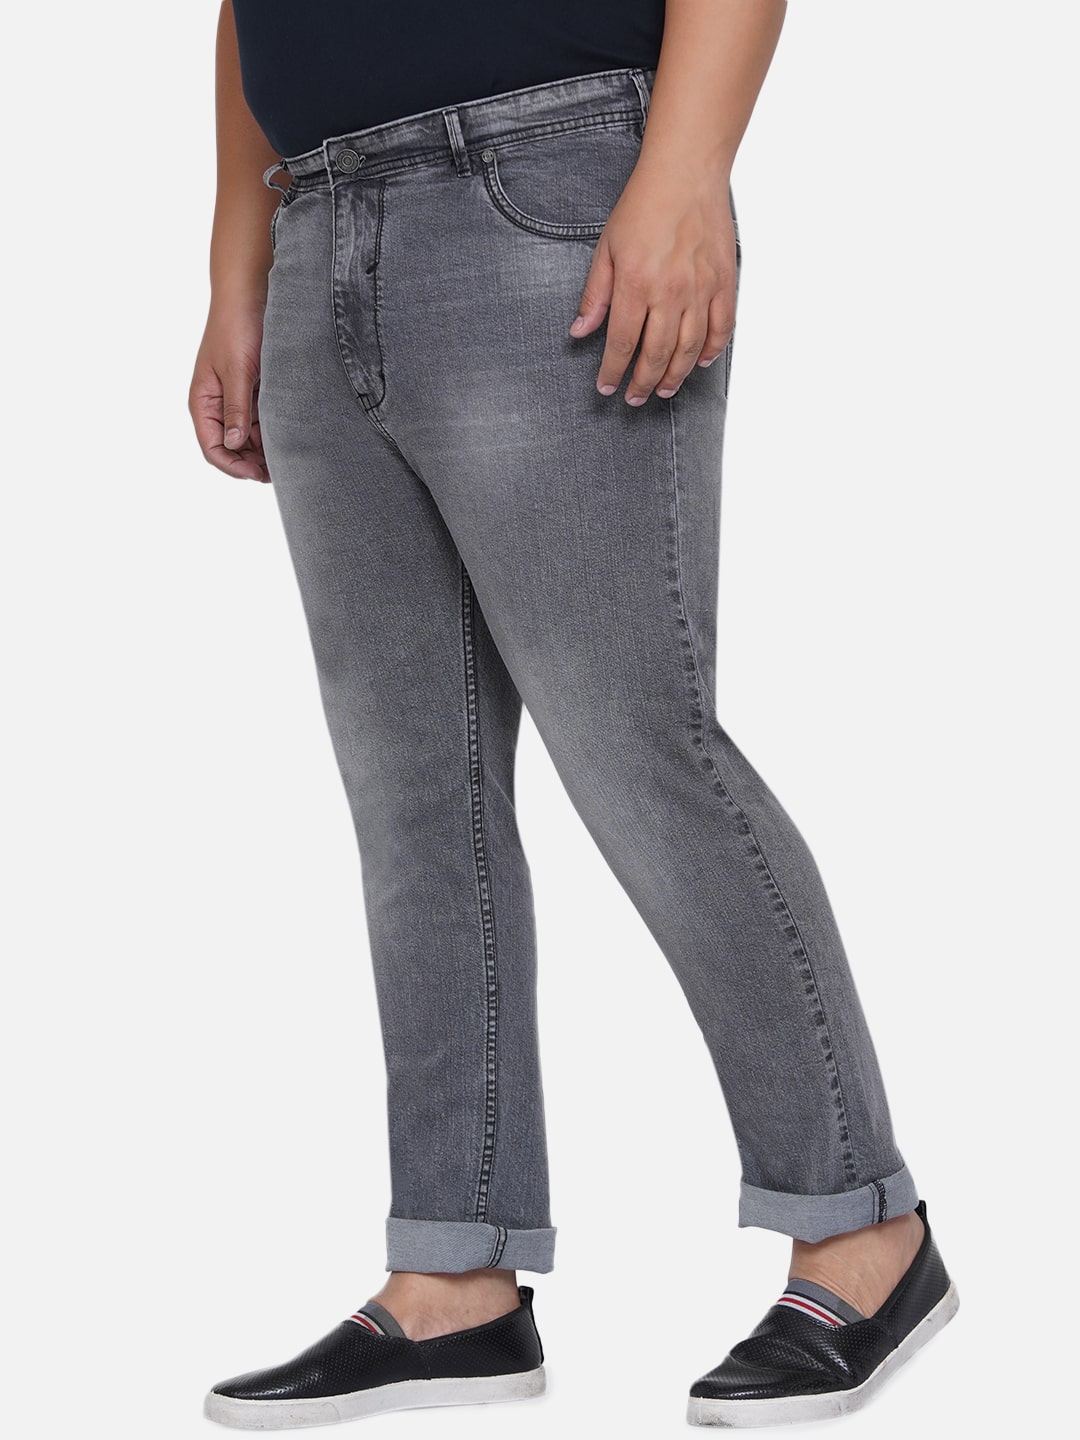 bottomwear/jeans/EJPJ25011/ejpj25011-5.jpg